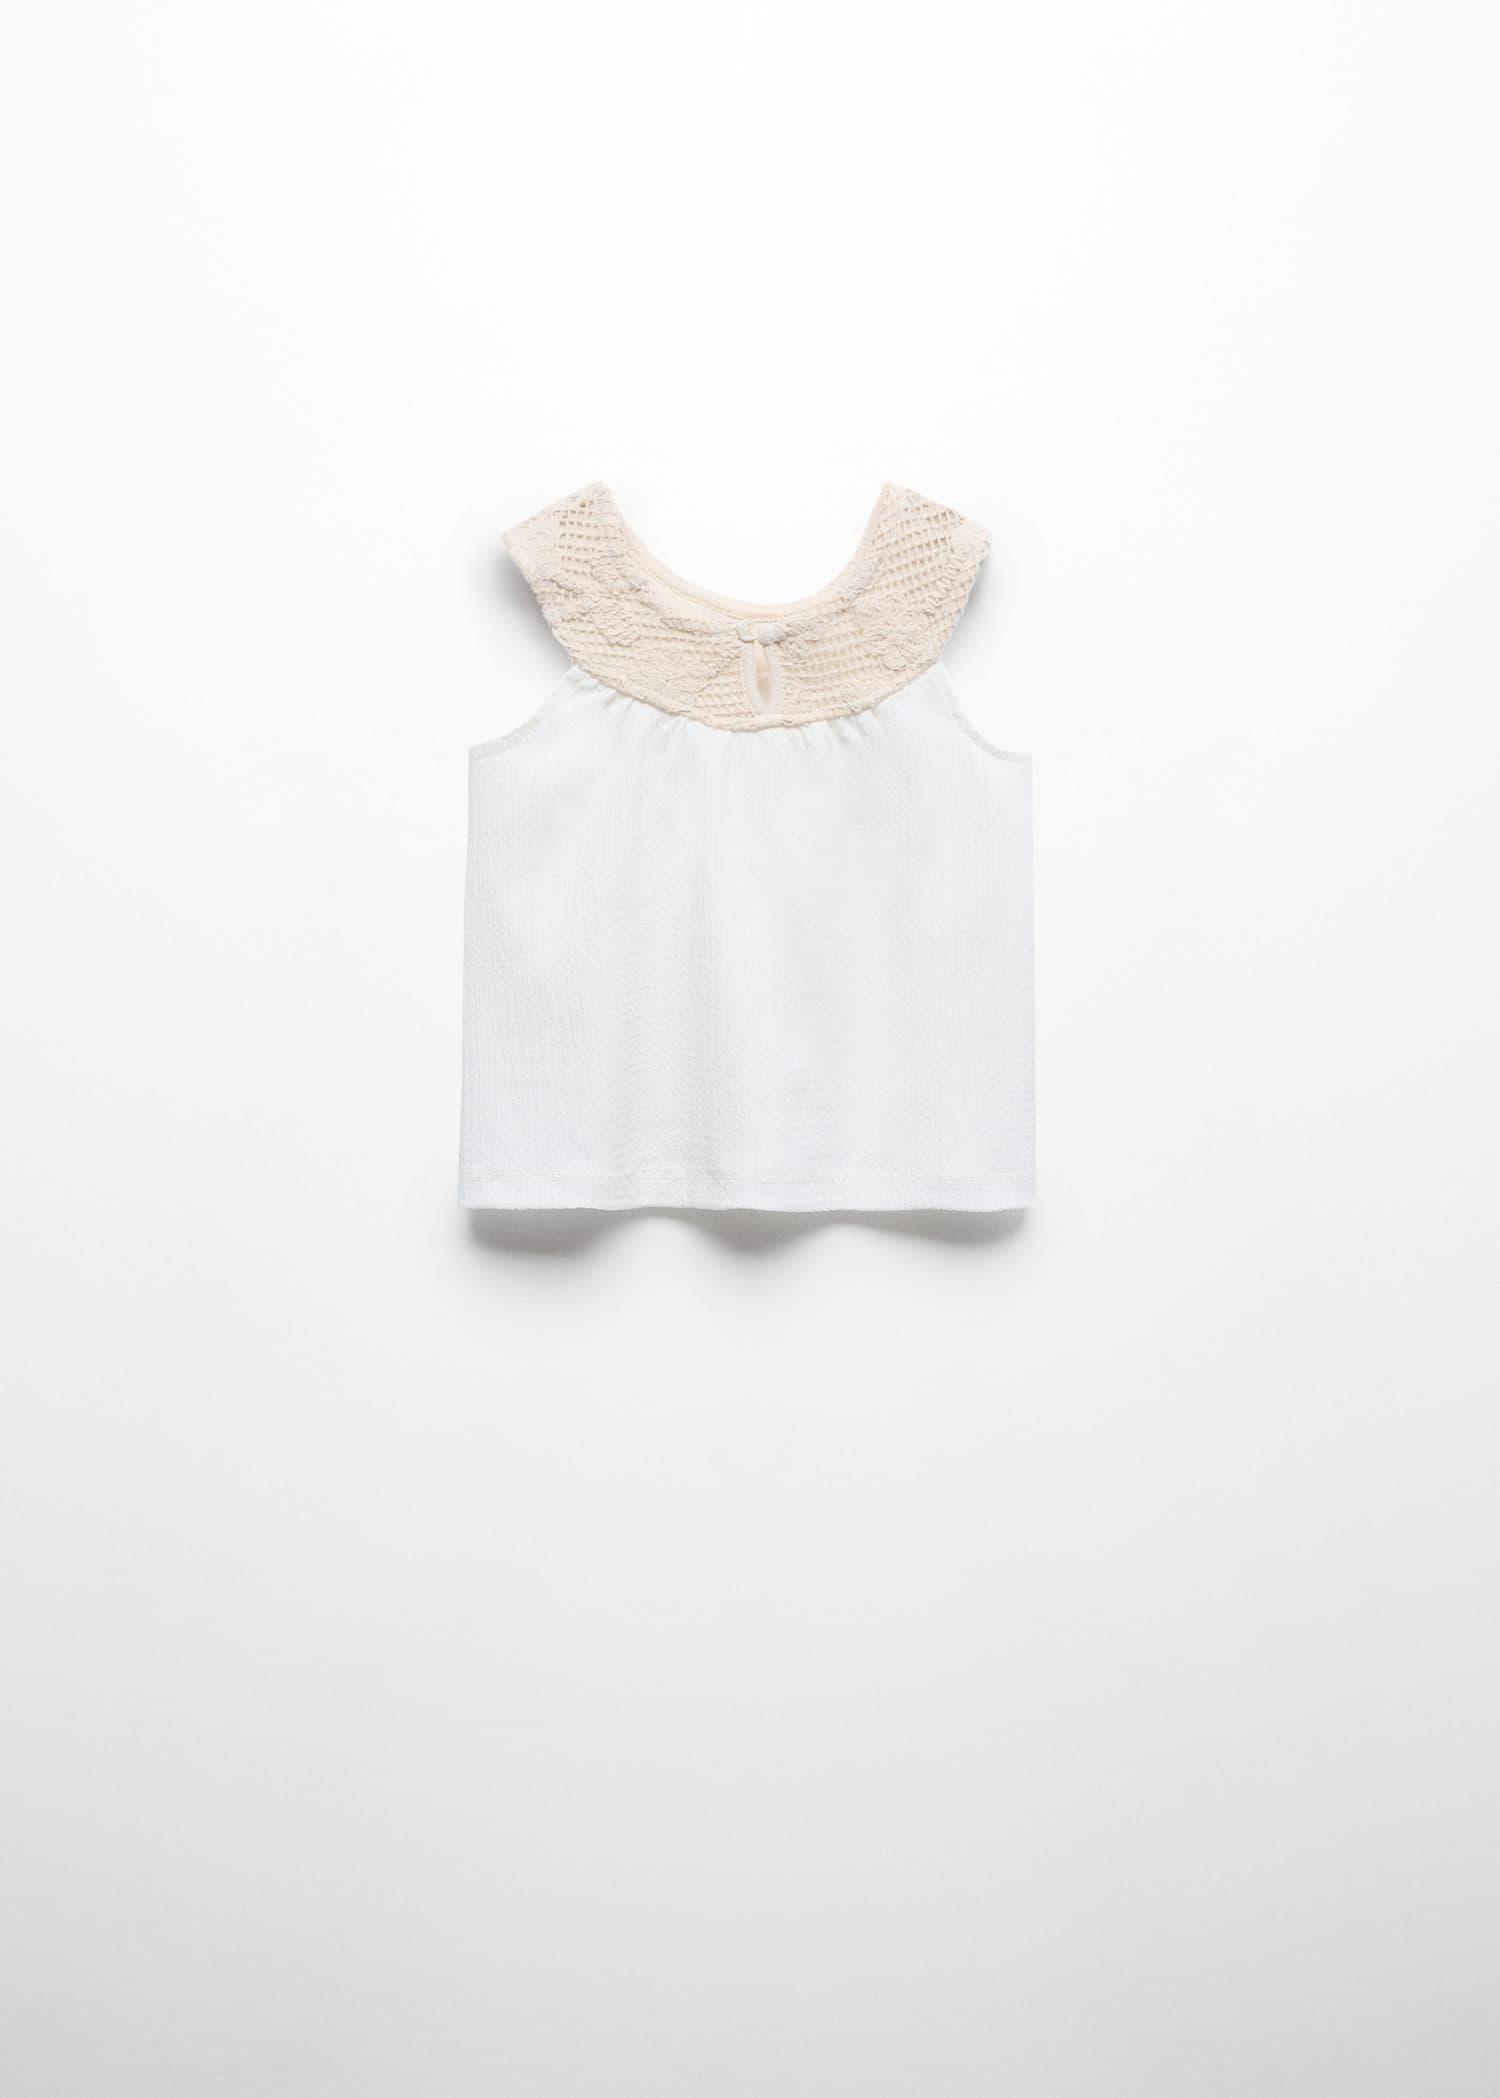 Mango - White Textured T-Shirt, Kids Girls